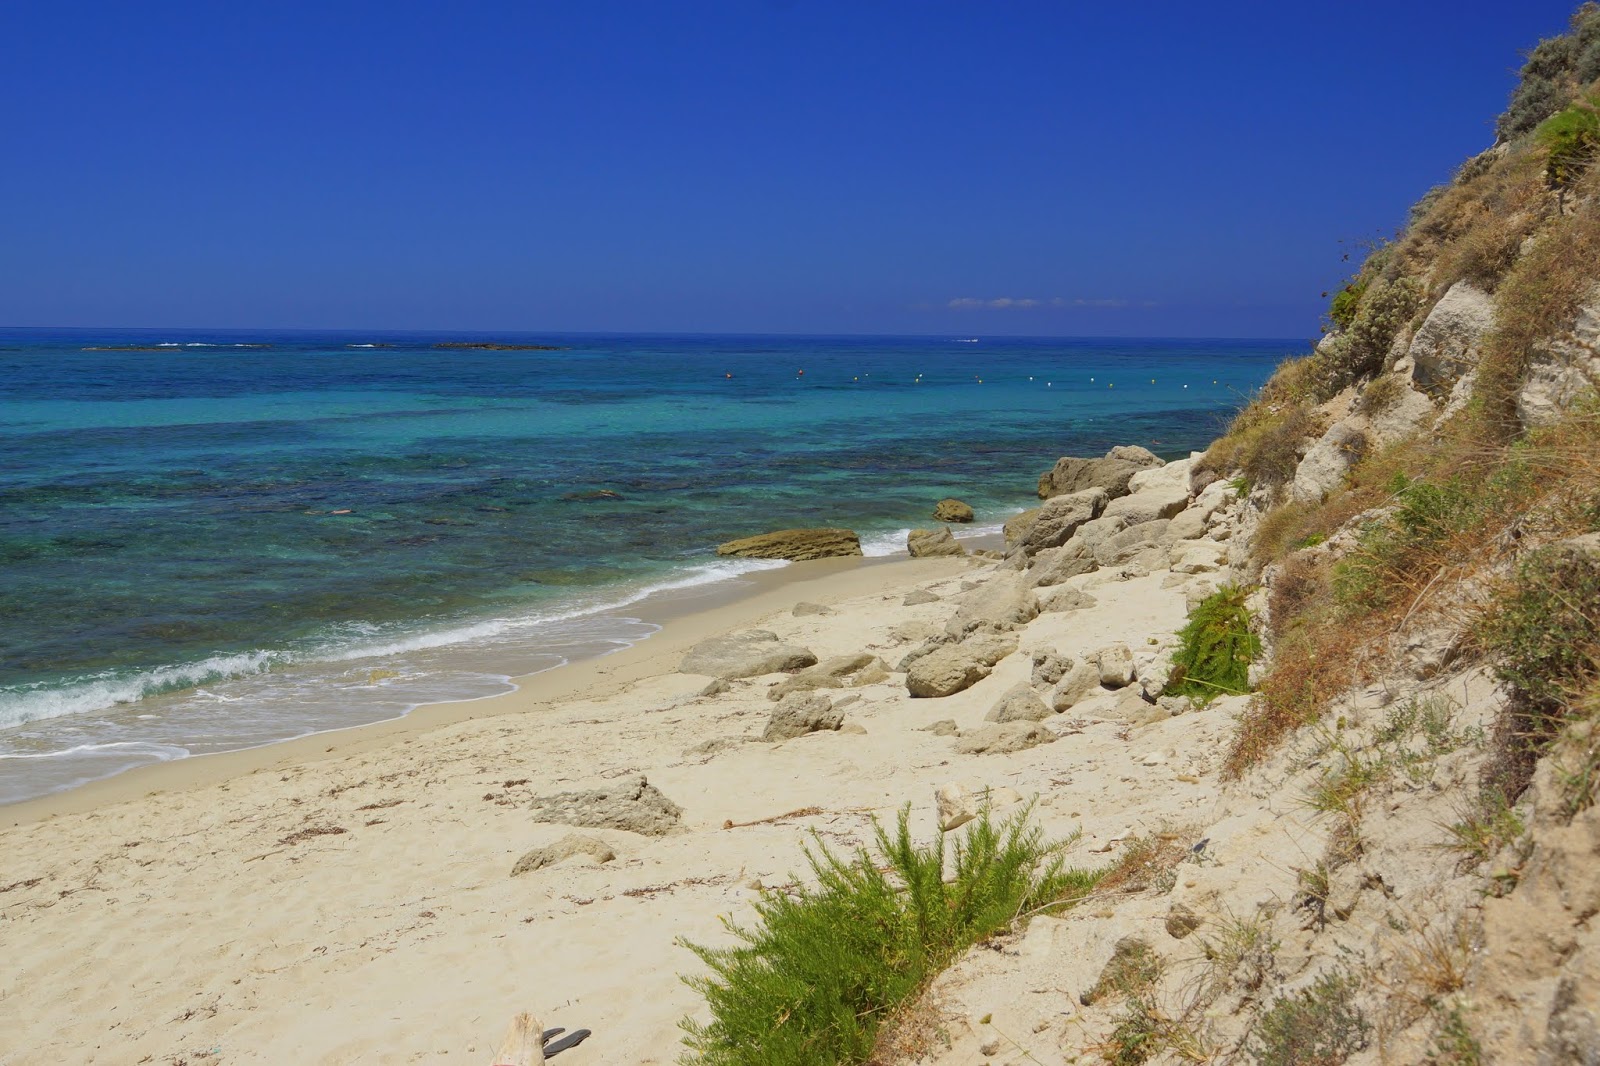 Ricadi beach'in fotoğrafı parlak kum yüzey ile